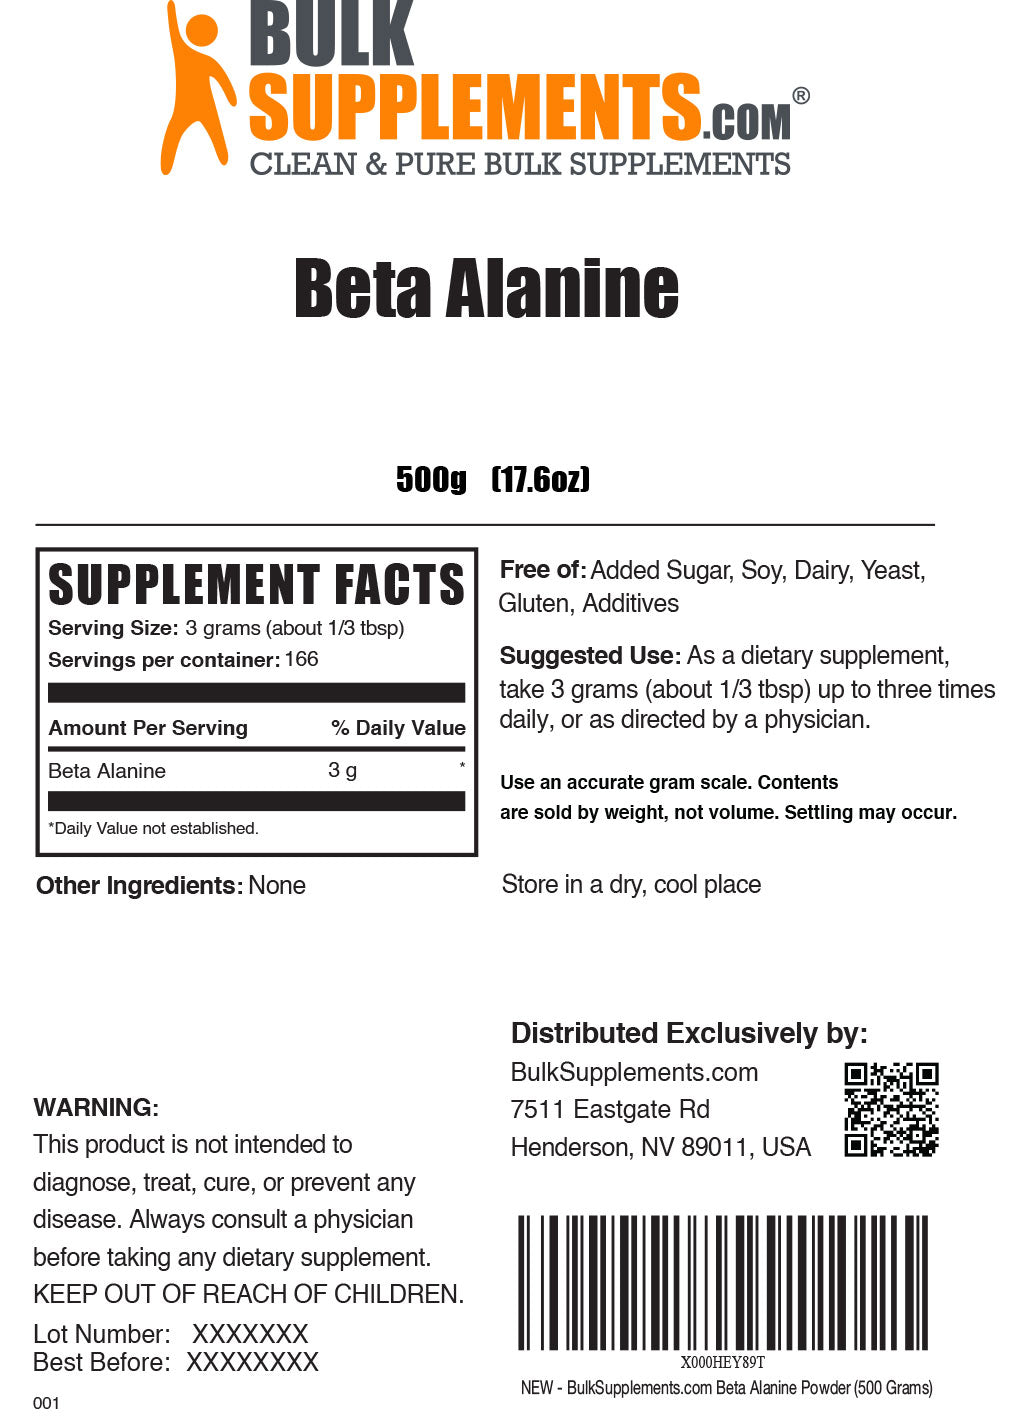 Beta Alanine Label 500g